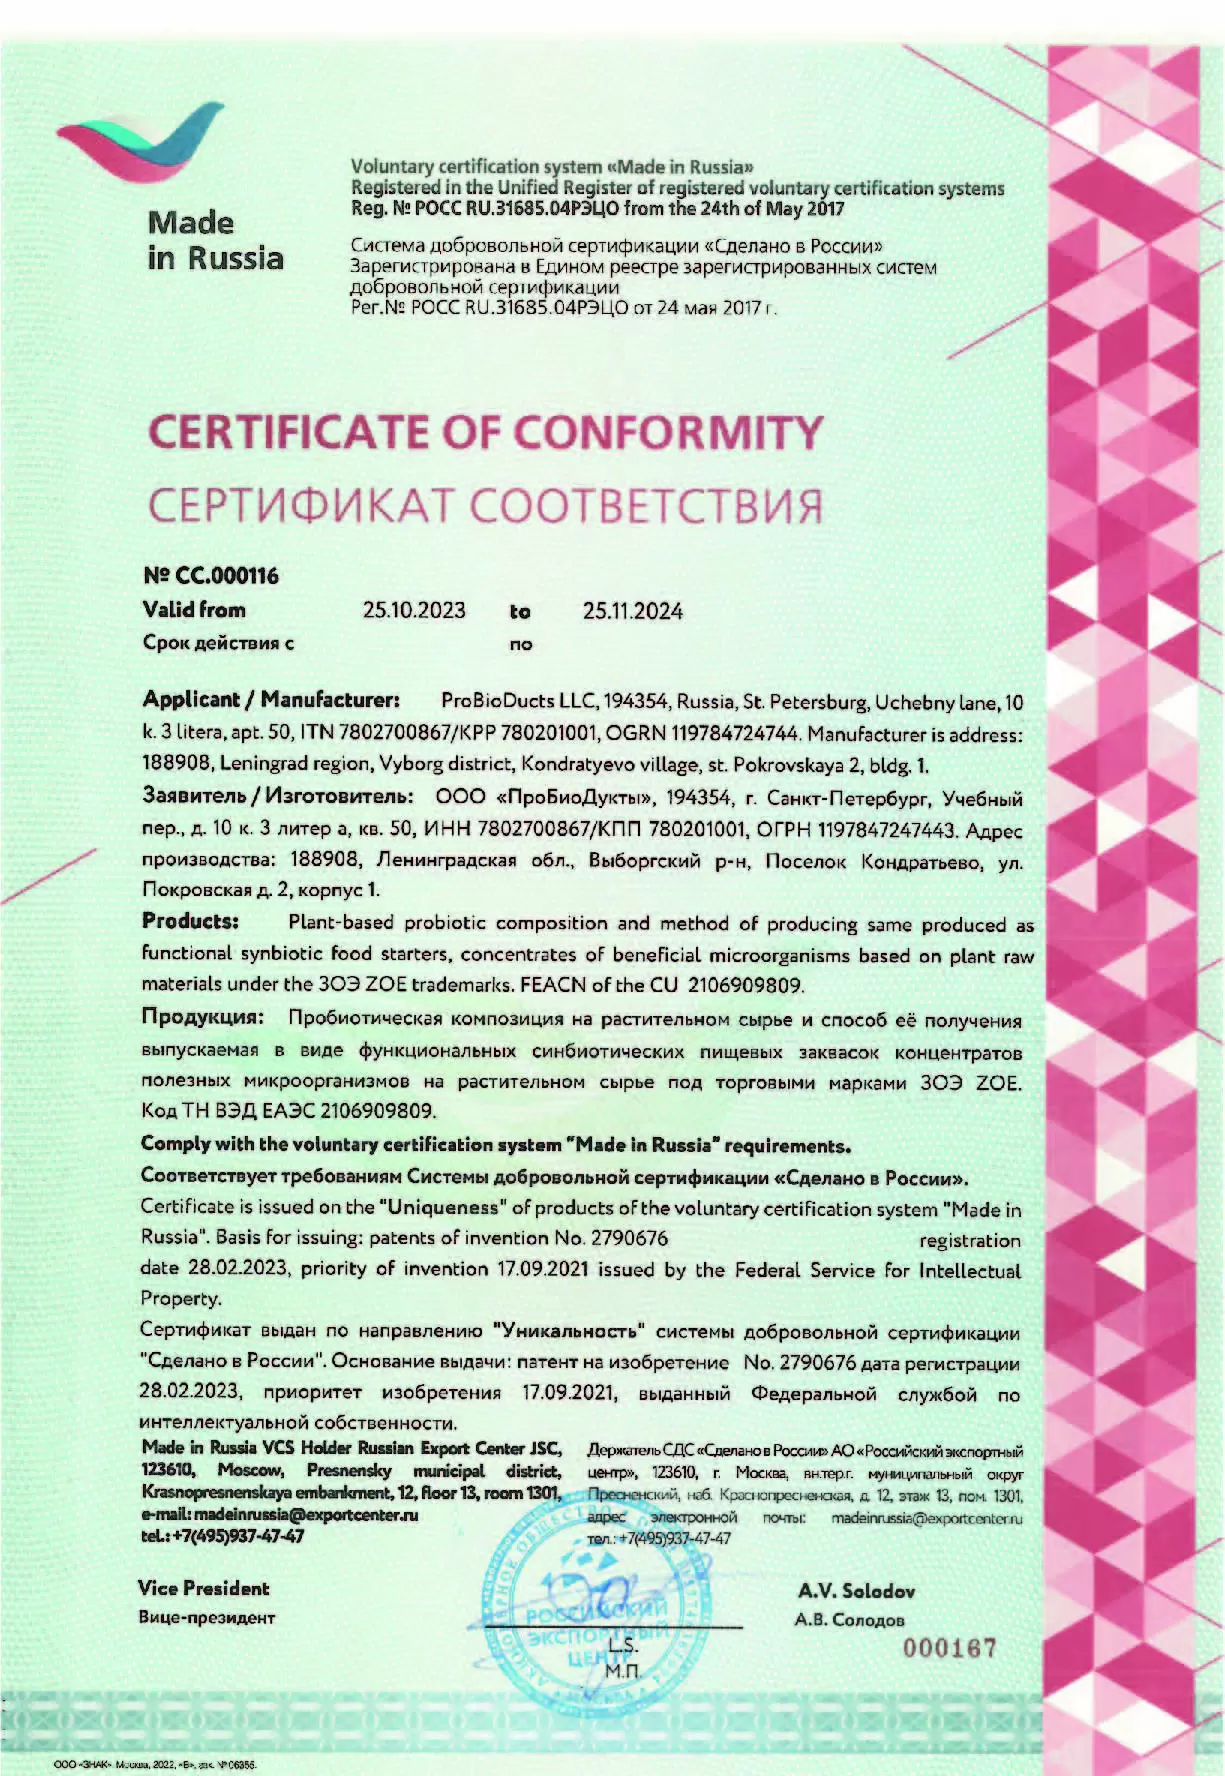 Сертификат соответствия ЗОЭ ZOE "Сделано в России" № СС.000116 “Made in Russia”